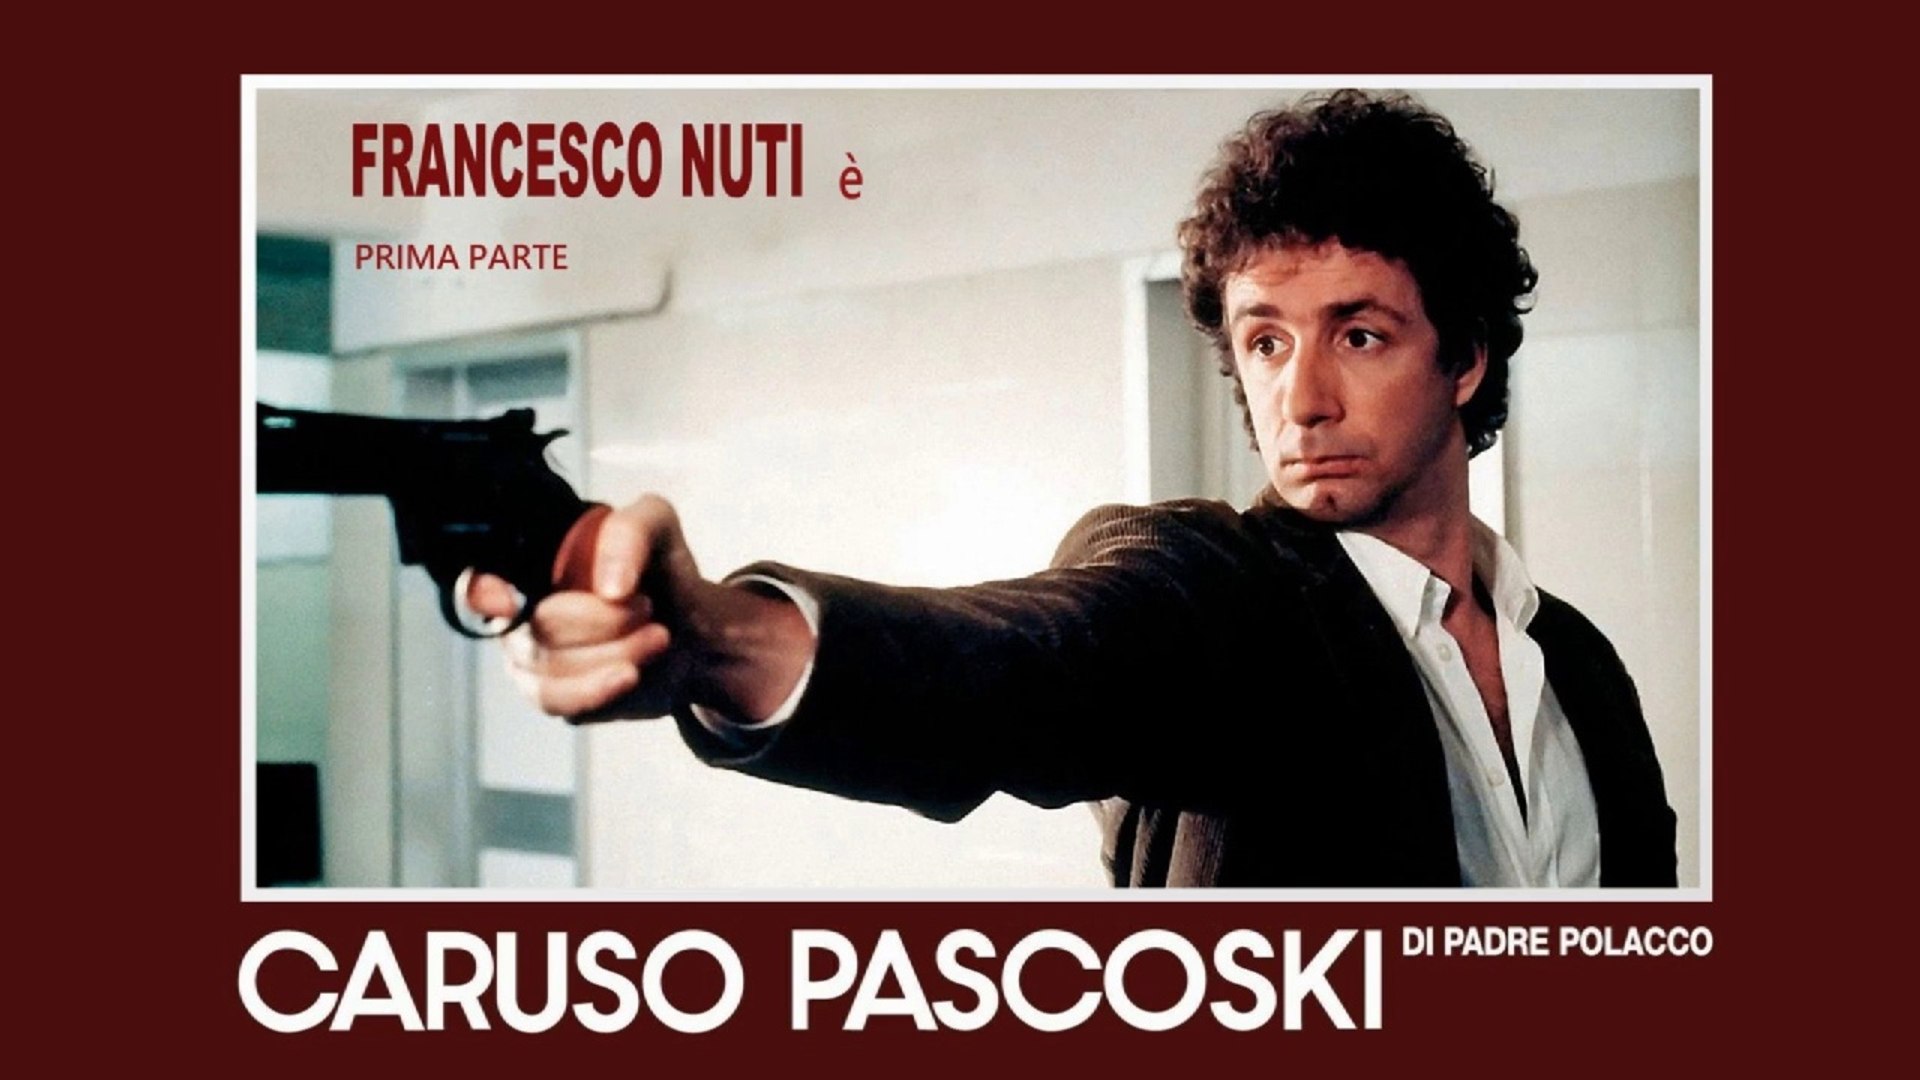 Caruso Pascoski (di padre polacco) (1988) 1°Parte HD - Video Dailymotion